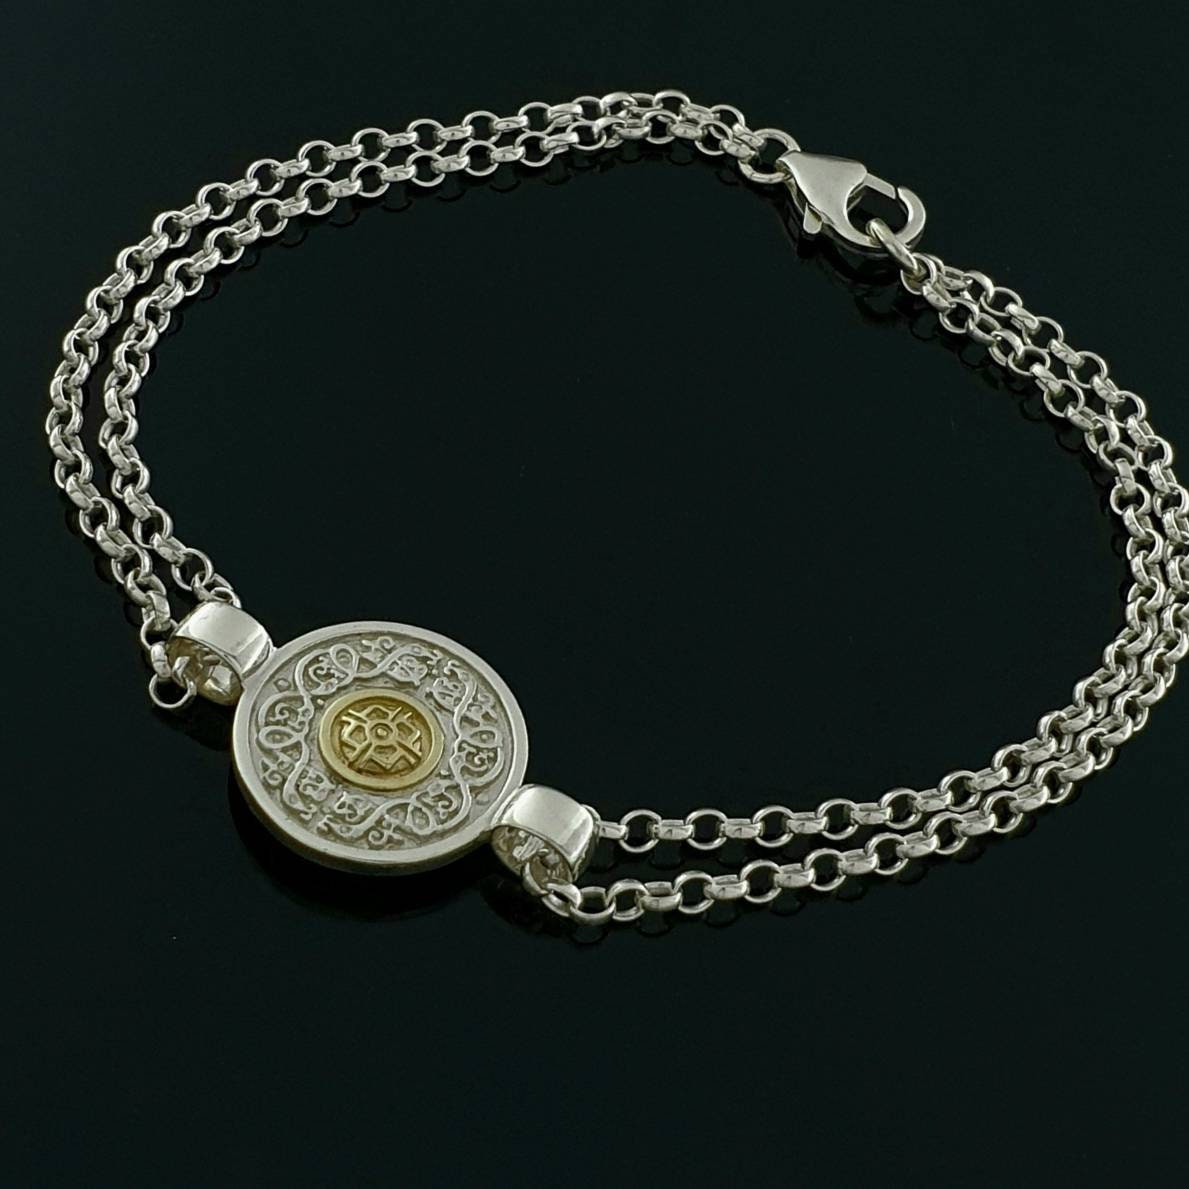 Kl Bangle Bracelets For Women - Silver Palace